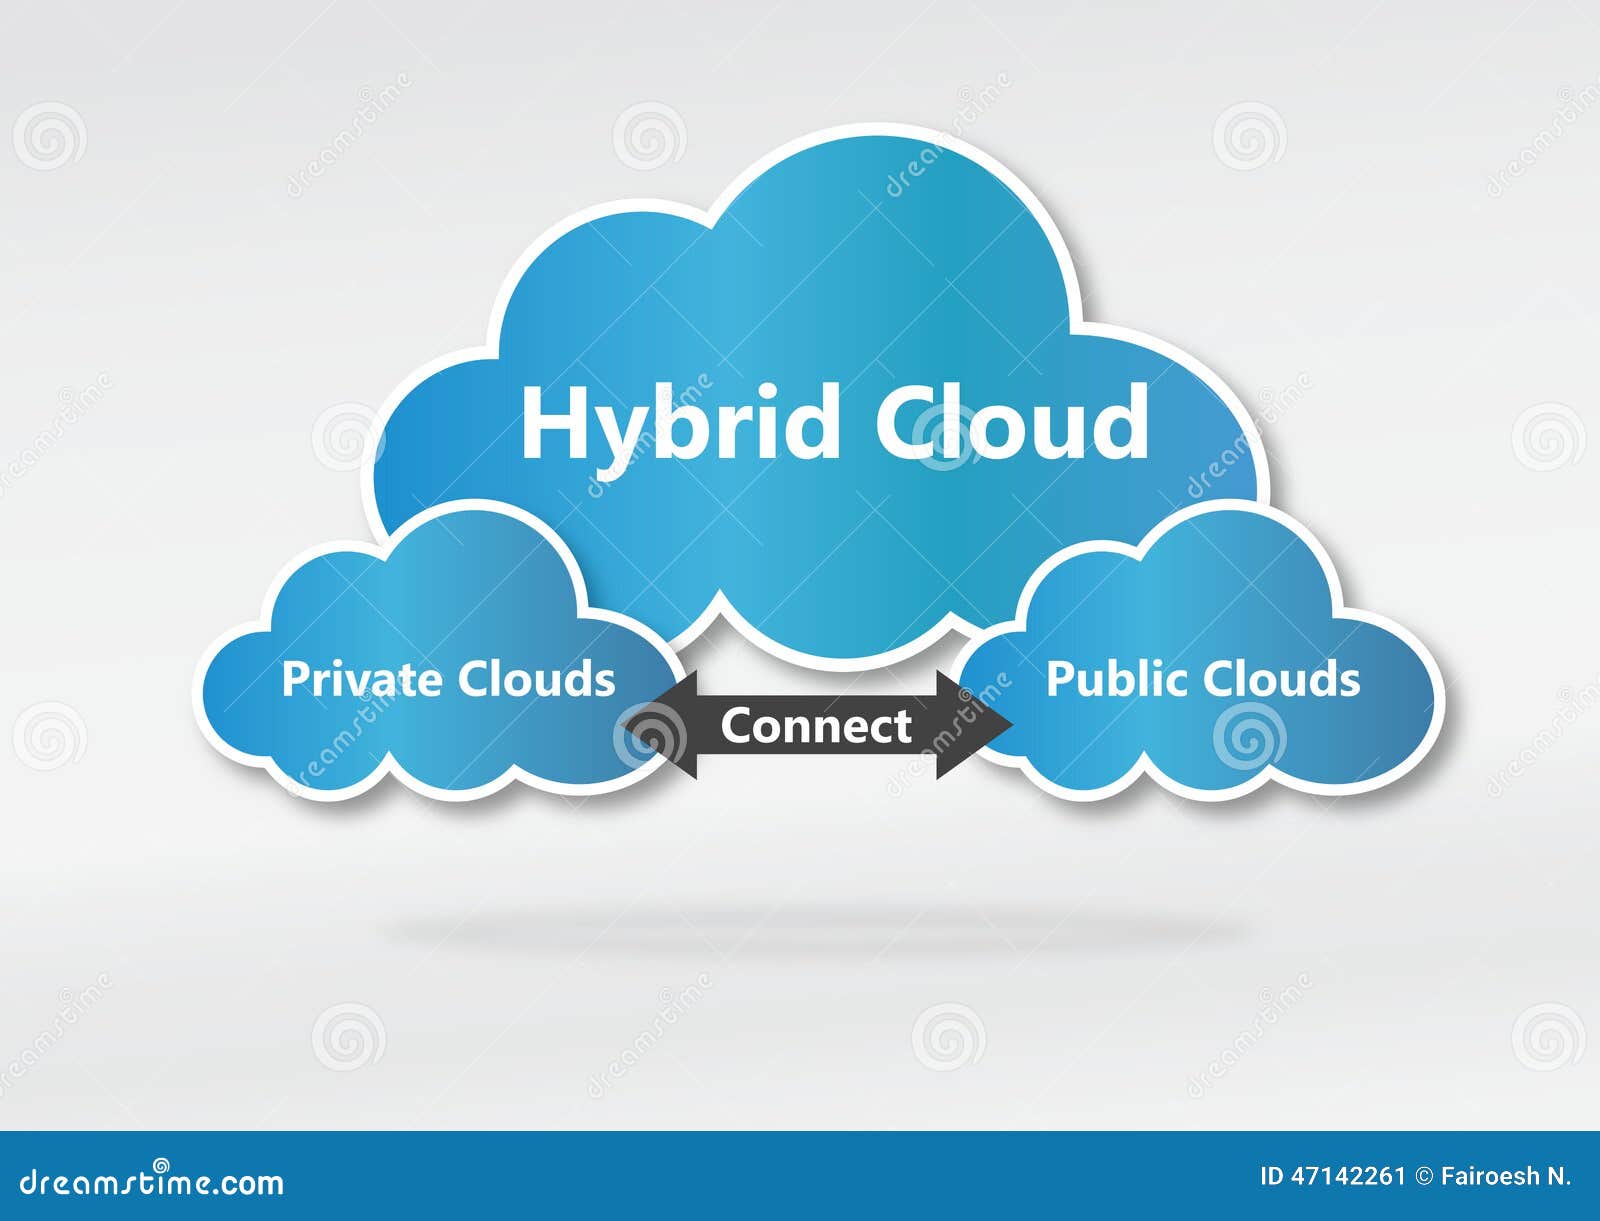 hybrid cloud concept